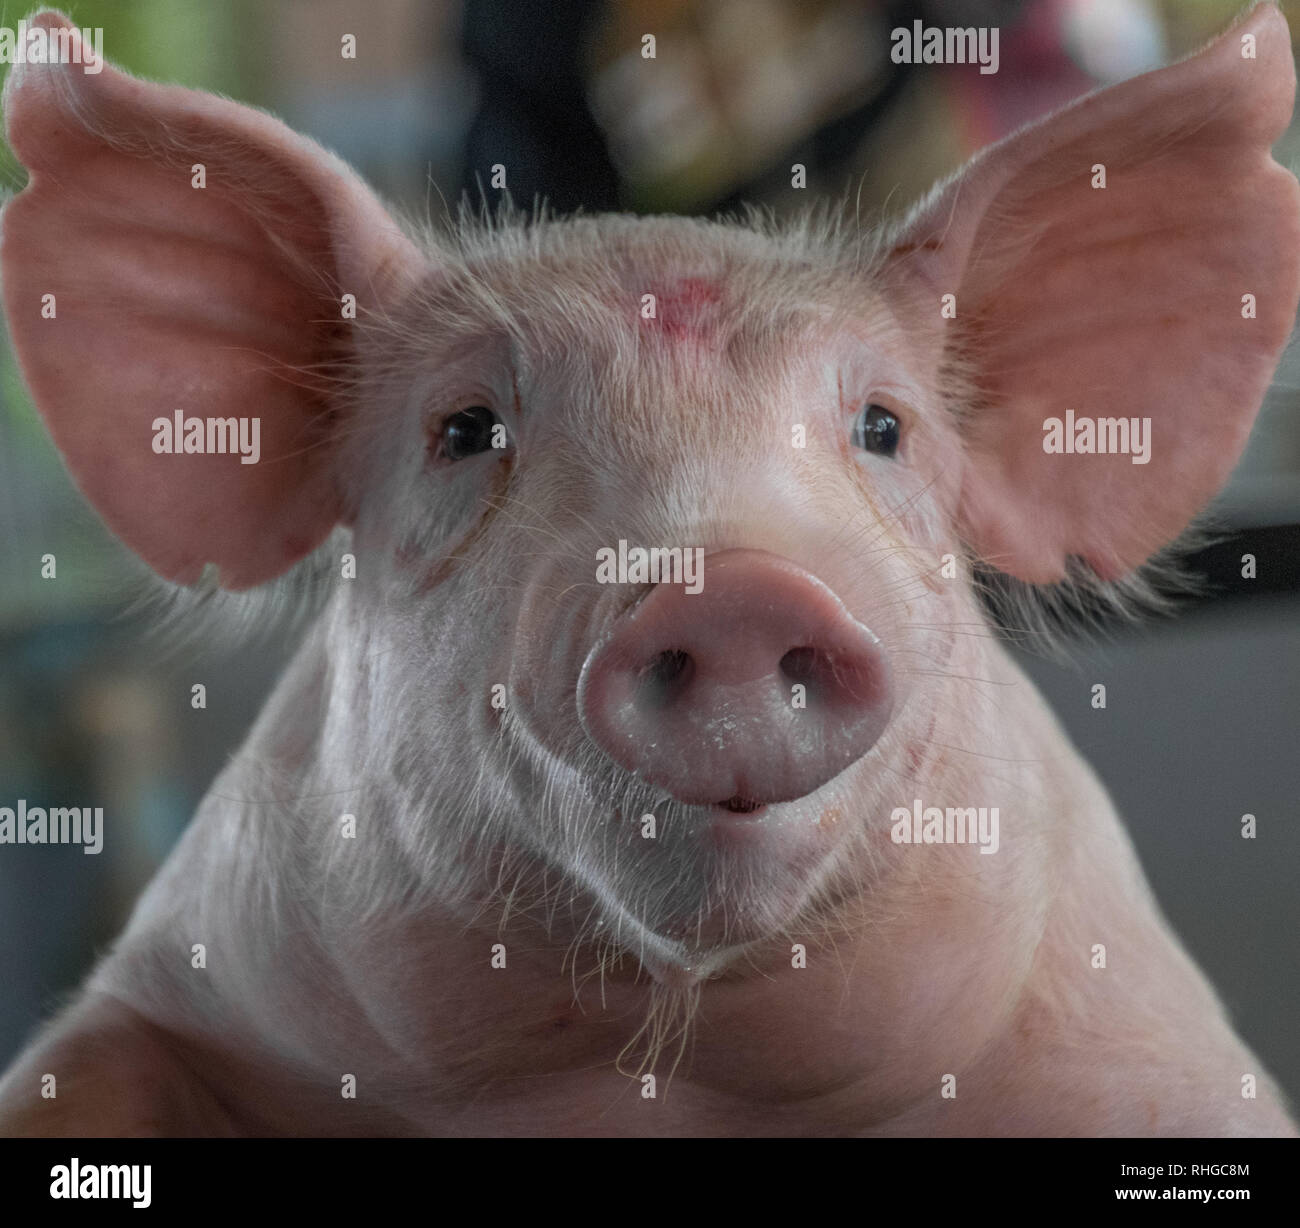 Portrait Der Lustige Kleine Schwein Isoliert Imagen Stockfotografie Alamy